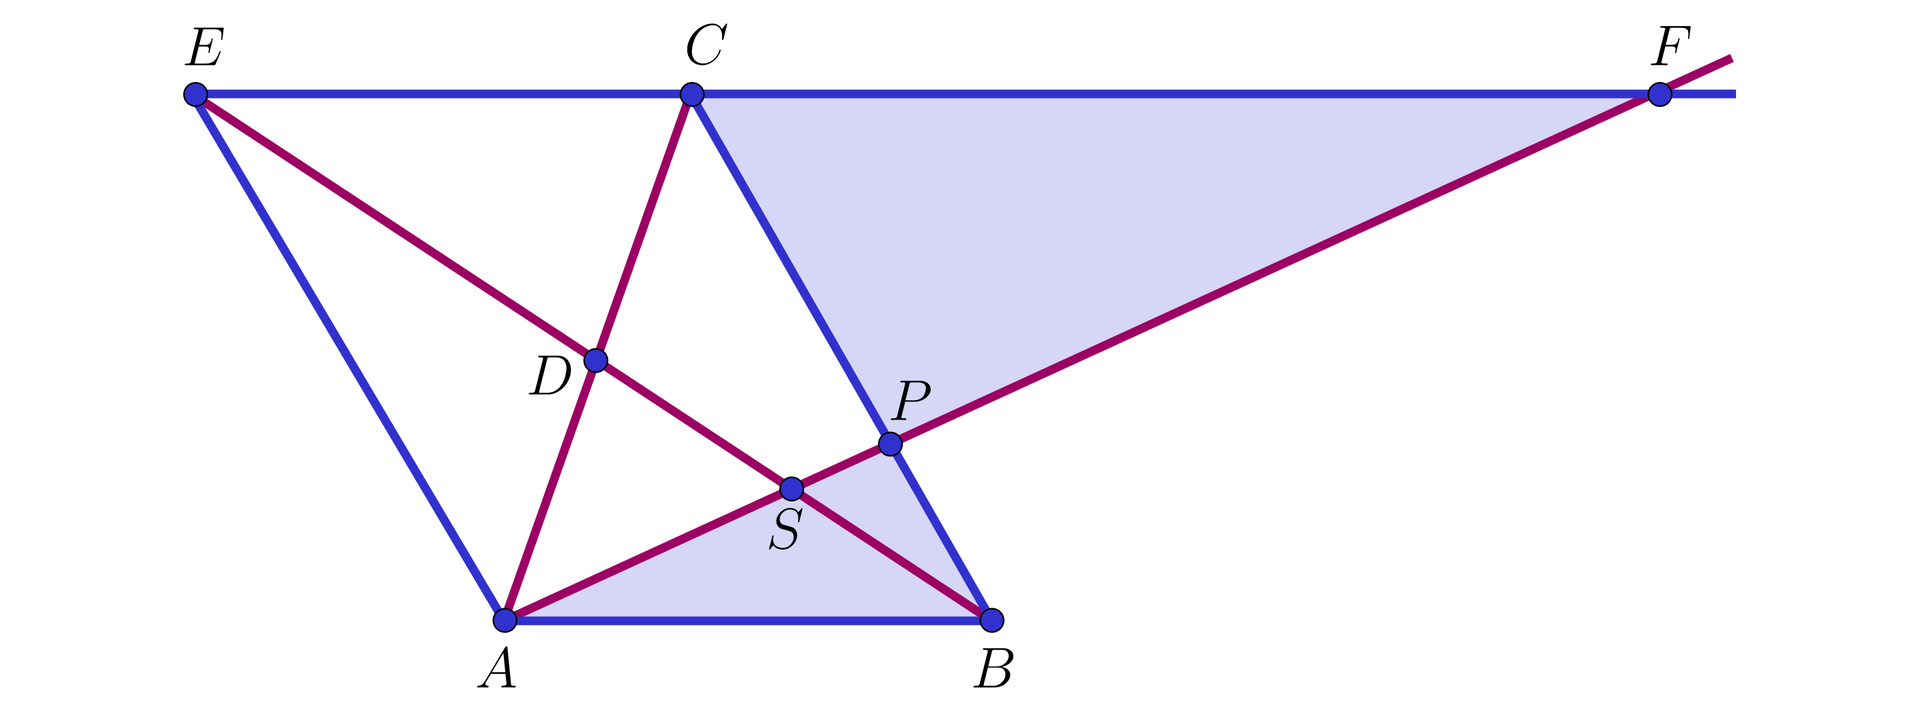 Na ilustracji przedstawiono równoległobok ABCE. Zaznaczono przekątne AC i BE równoległoboku, które przecinają się w punkcie D. Z wierzchołka A poprowadzono półprostą, która przecina przekątną EB w punkcie S i bok BC w punkcie P. Zaznaczono punkt F, który stanowi miejsce przecięcia półprostej AP z przedłużeniem górnej podstawy EC. Niebieskim kolorem zacieniowano trójkąt APB, oraz CPF.